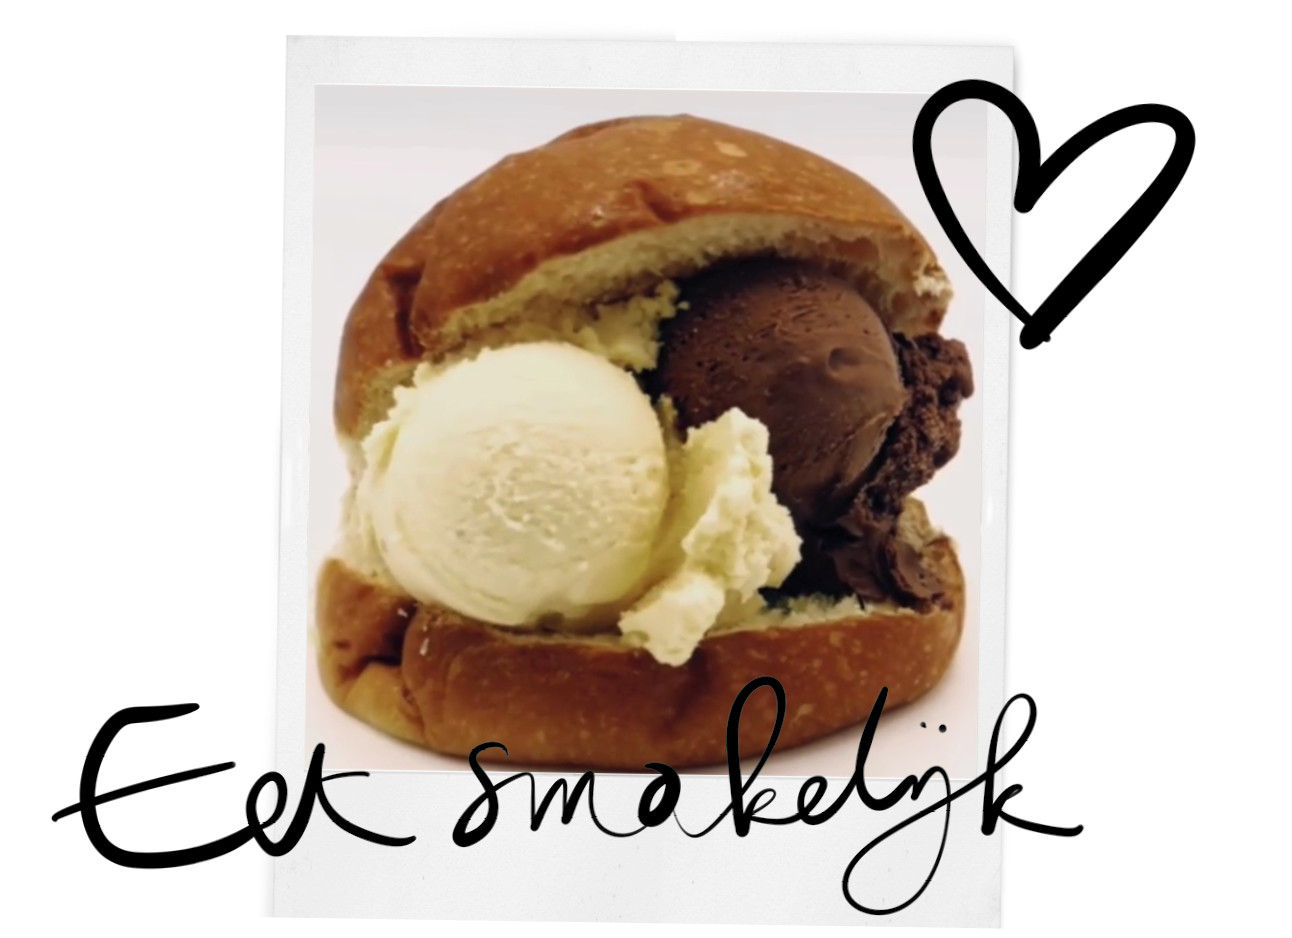 nieuw broodje ijs van roberto gelato, een broodje met chocolade en vanille ijs eestmakelijk hartje